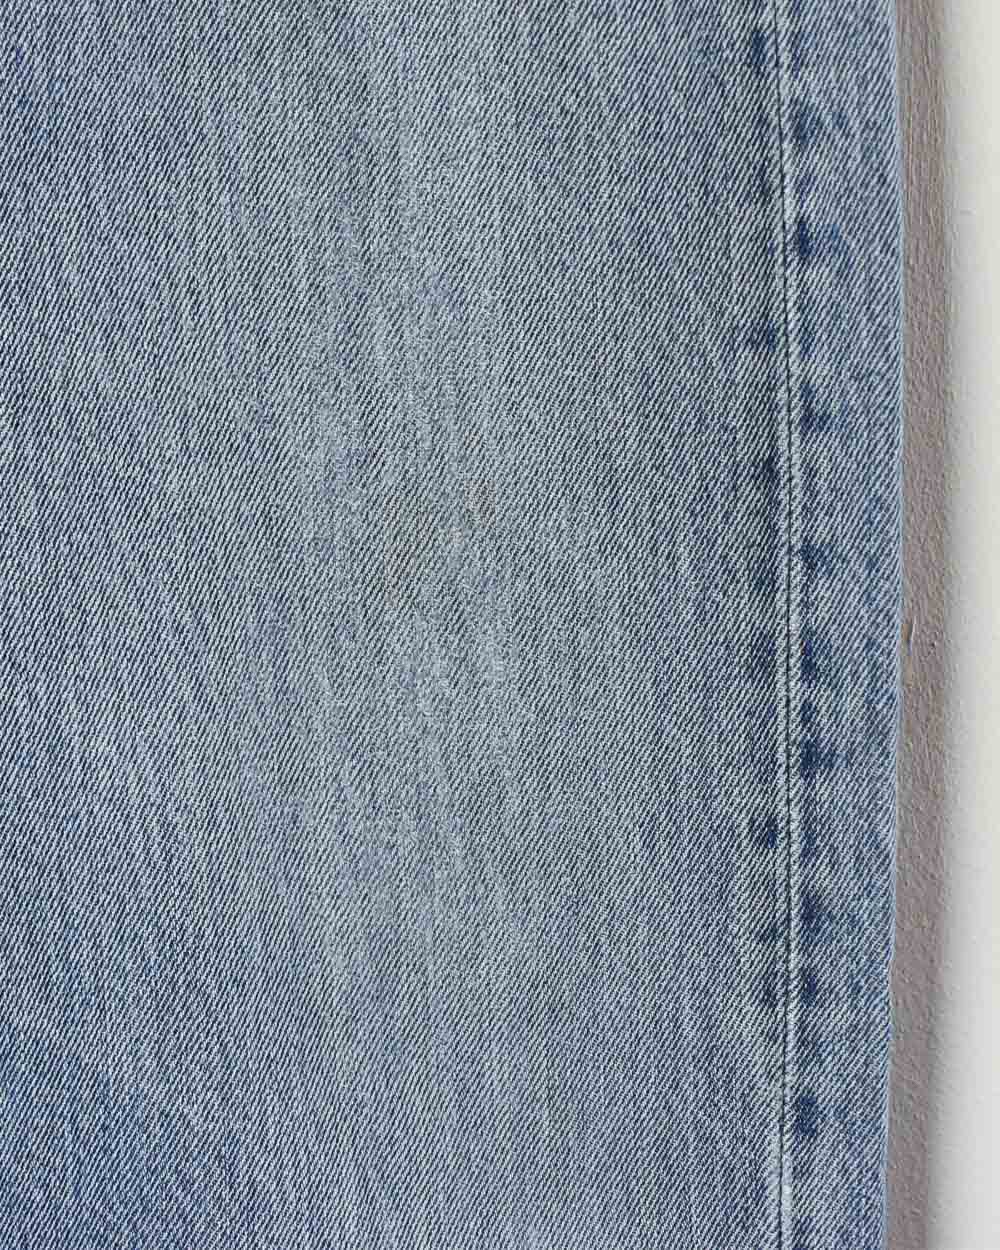 Blue Levi's 501 Jeans - W36 L30